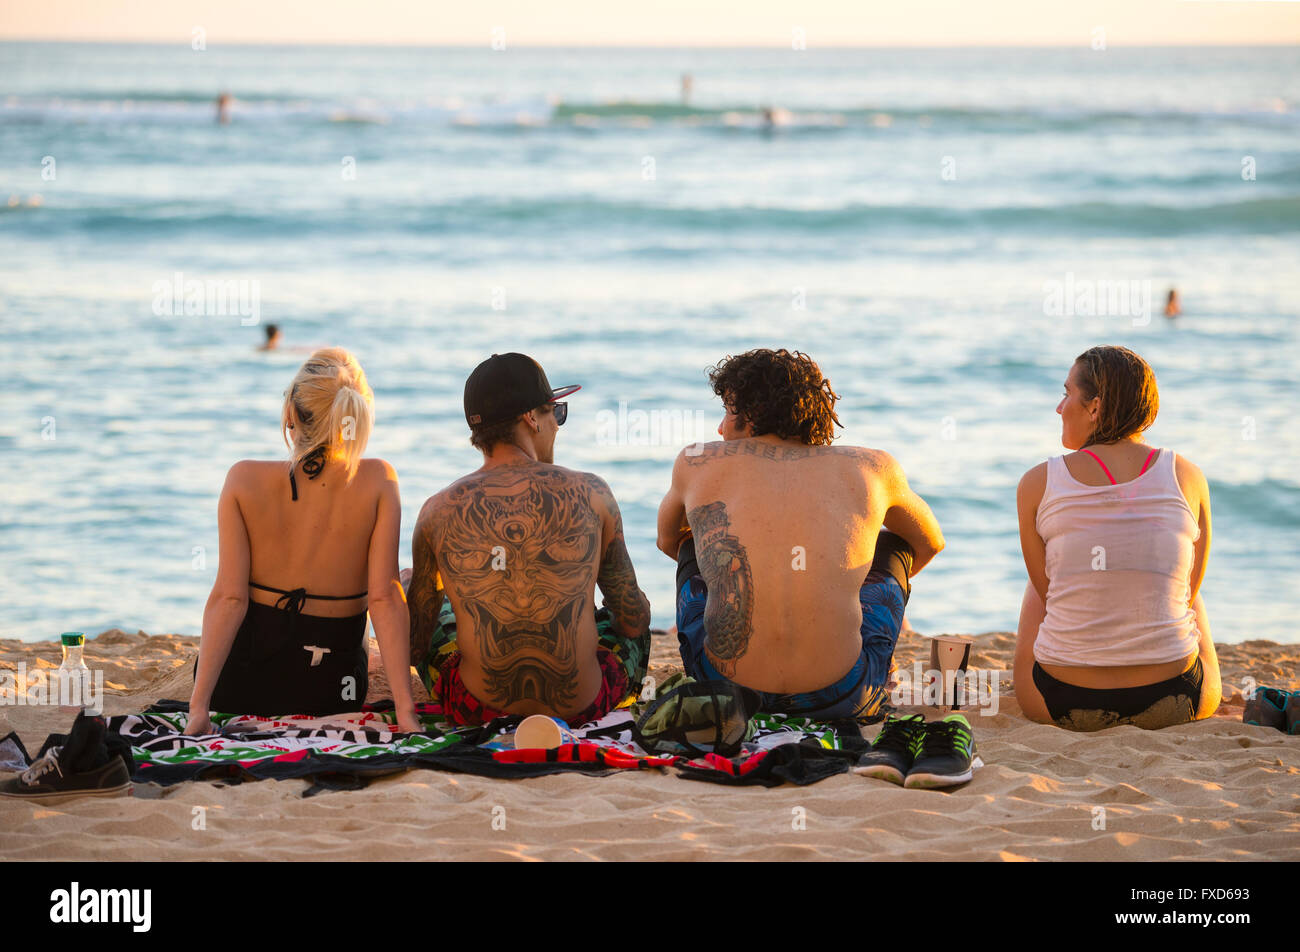 USA, Hawaii, Oahu, Honolulu, Waikiki, les gens on beach Banque D'Images